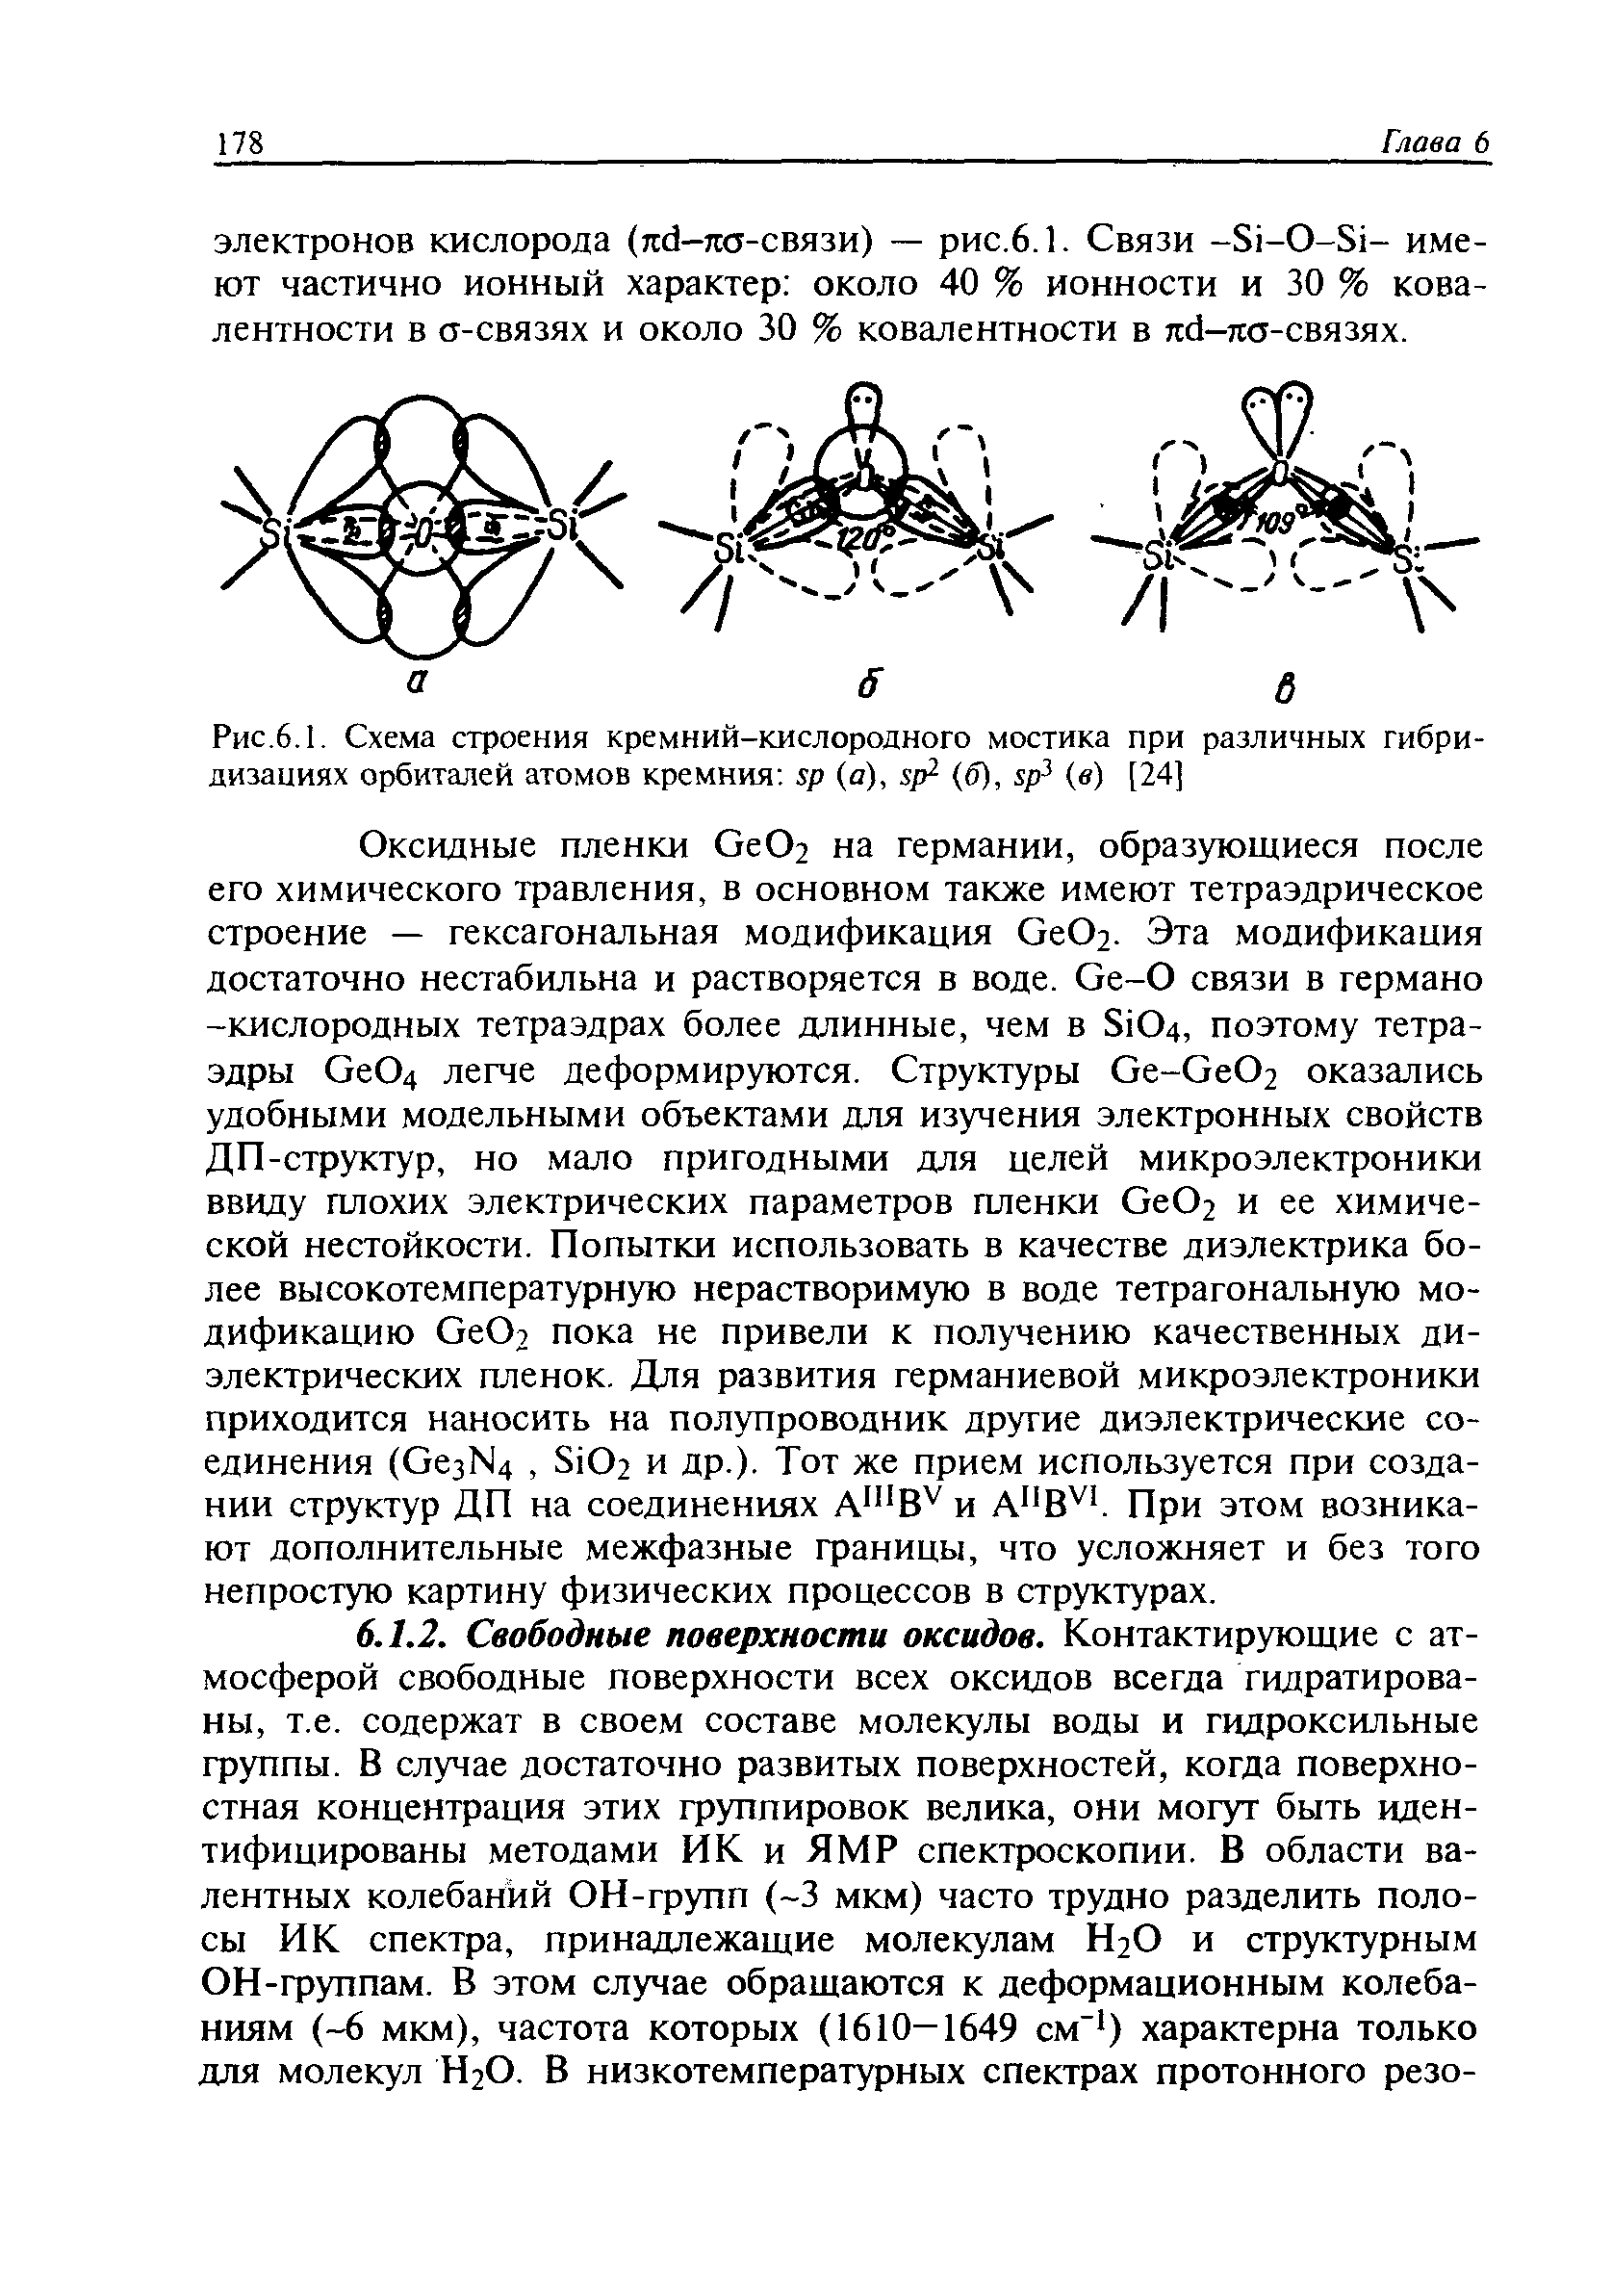 Рис.6.1. Схема строения кремний-кислородного мостика при различных гибридизациях орбиталей атомов кремния sp (а), sp (б), sp (в) [24]
